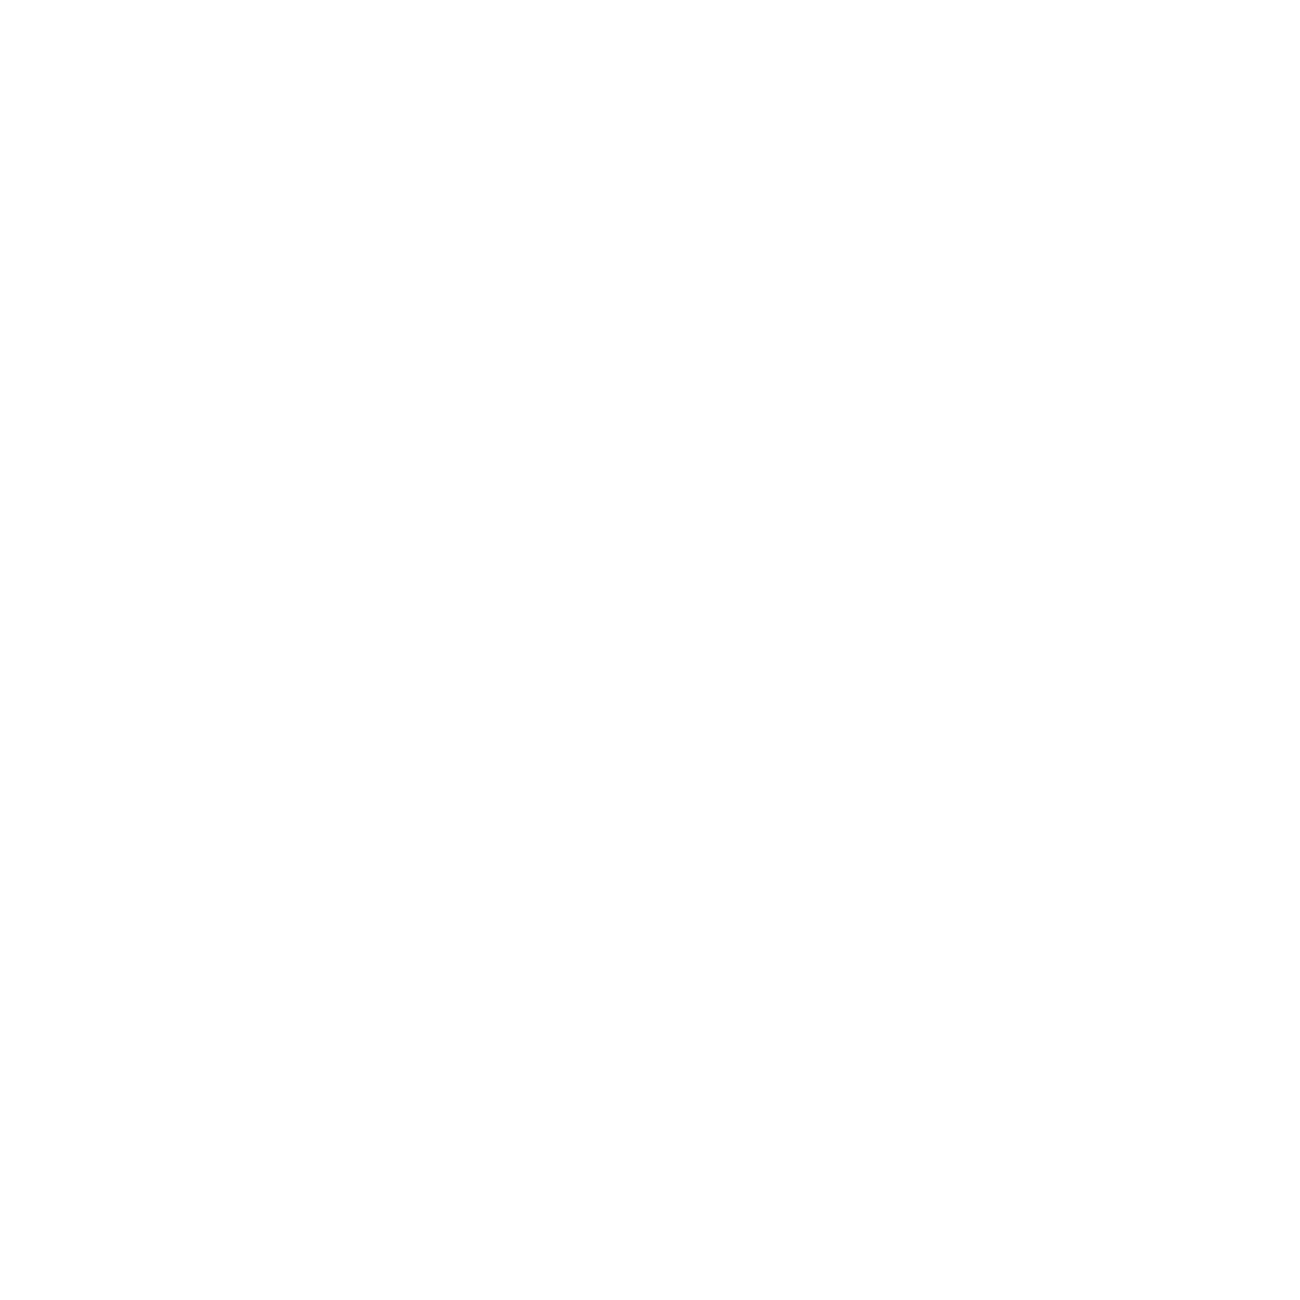 ADSPE